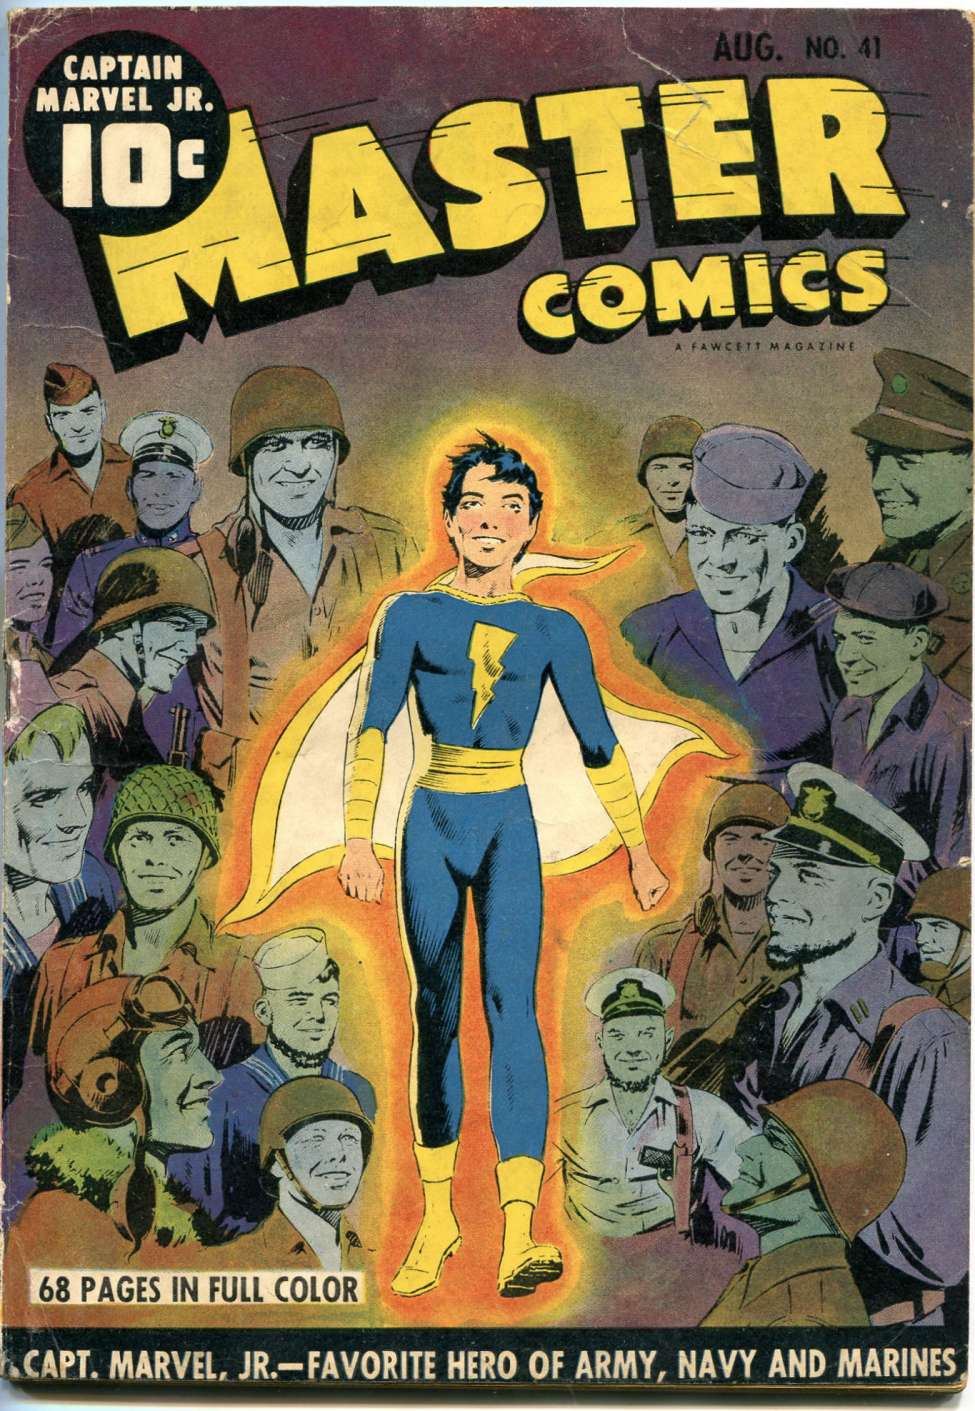 Master Comics #19